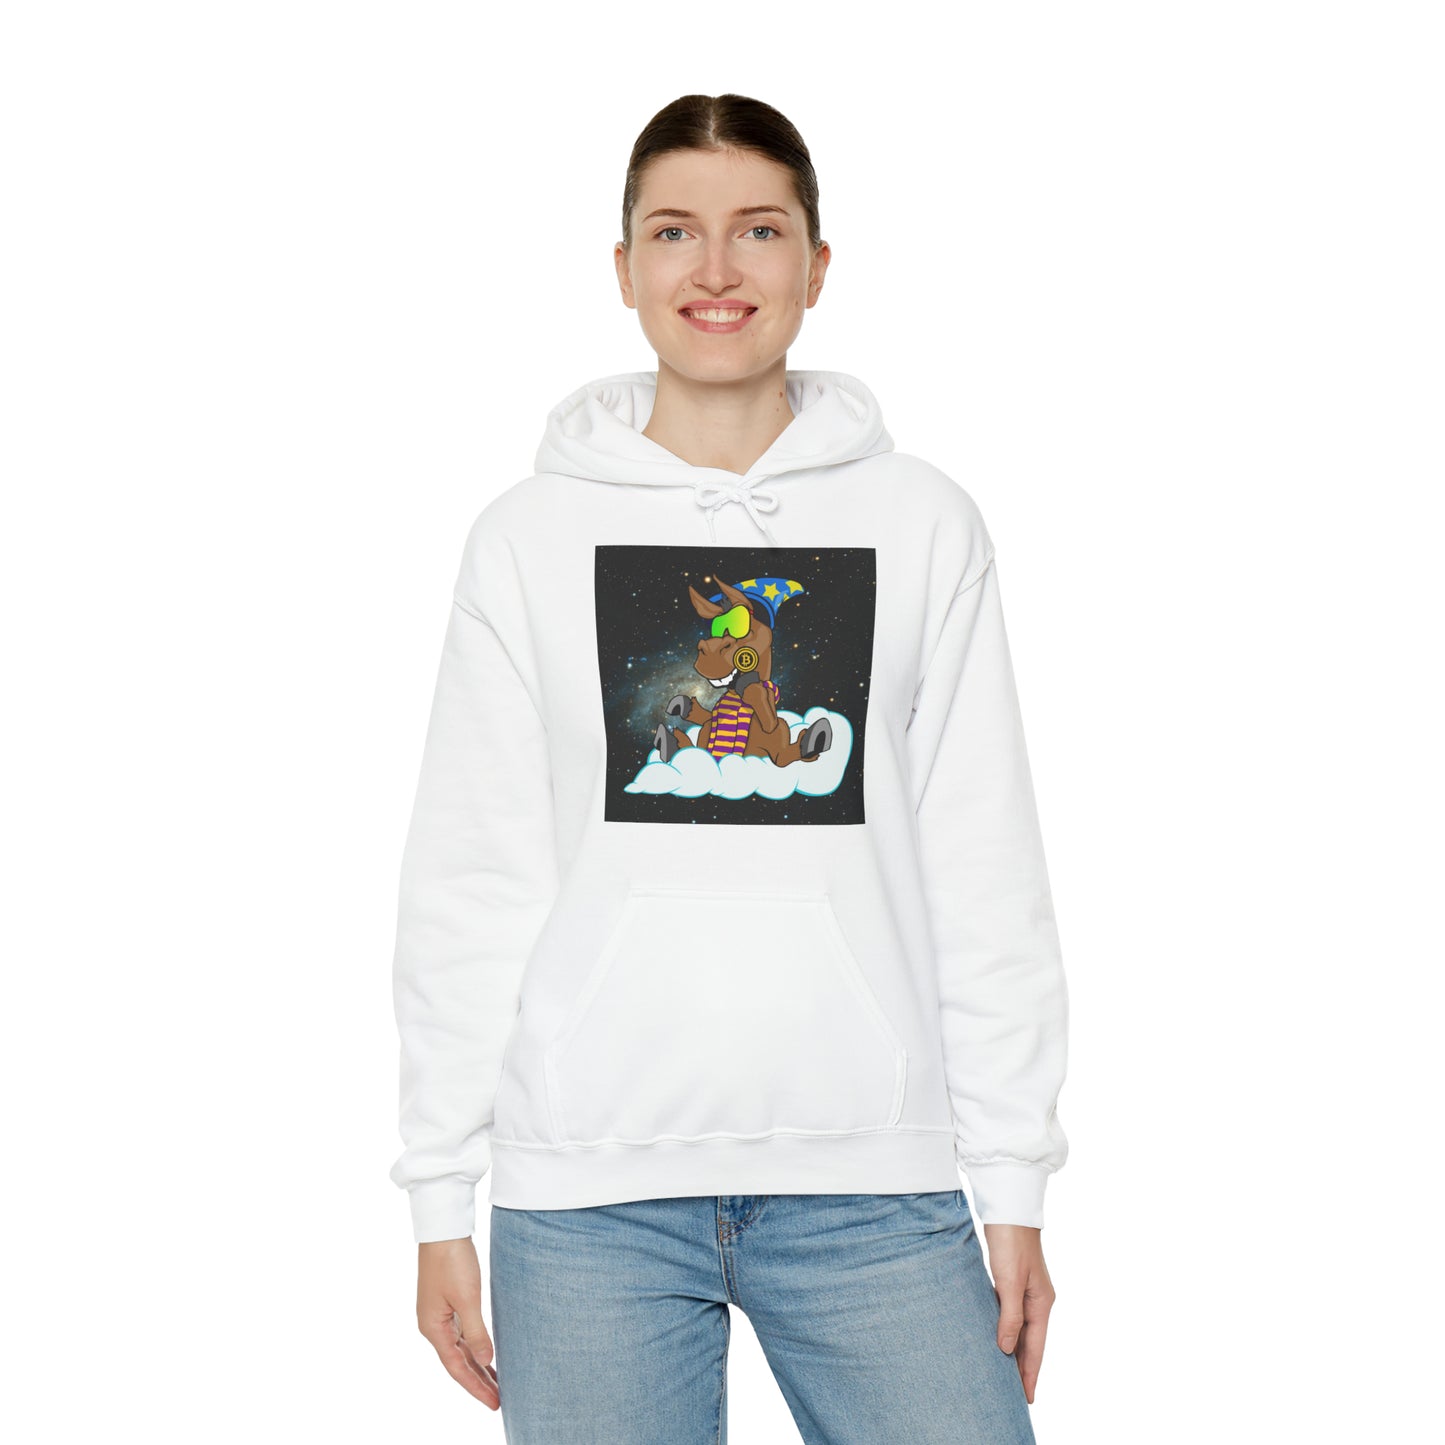 DeFi Space Donkeys #2 Unisex Heavy Blend™ Hooded Sweatshirt